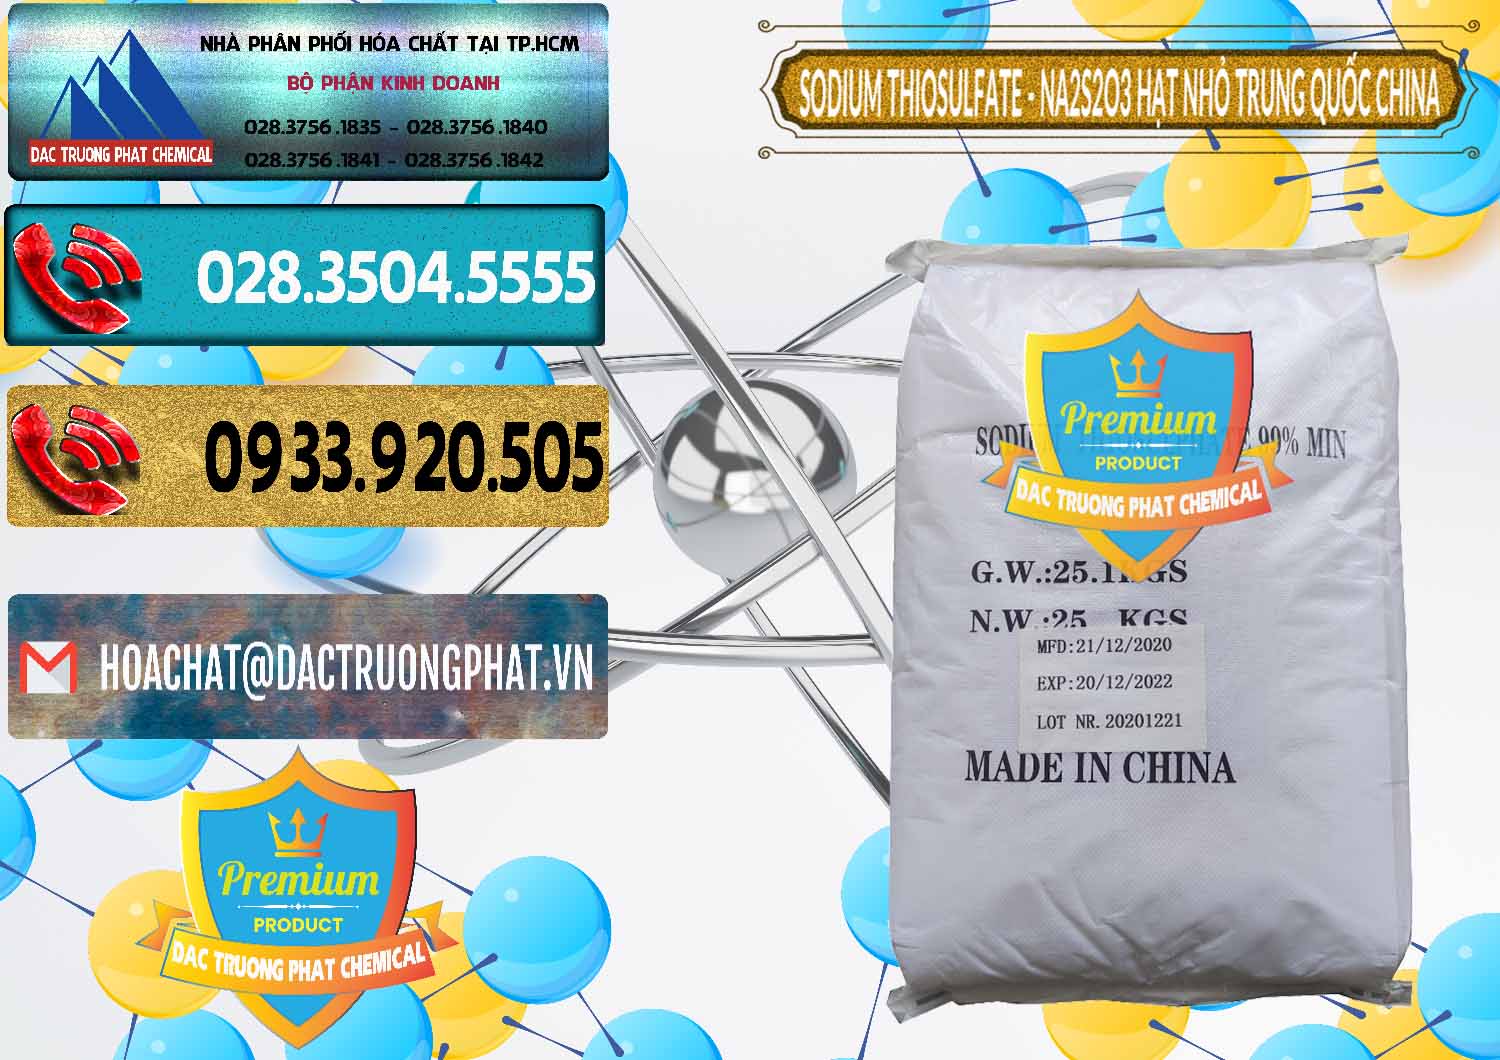 Công ty bán - phân phối Sodium Thiosulfate - NA2S2O3 Hạt Nhỏ Trung Quốc China - 0204 - Đơn vị nhập khẩu - cung cấp hóa chất tại TP.HCM - hoachatdetnhuom.com